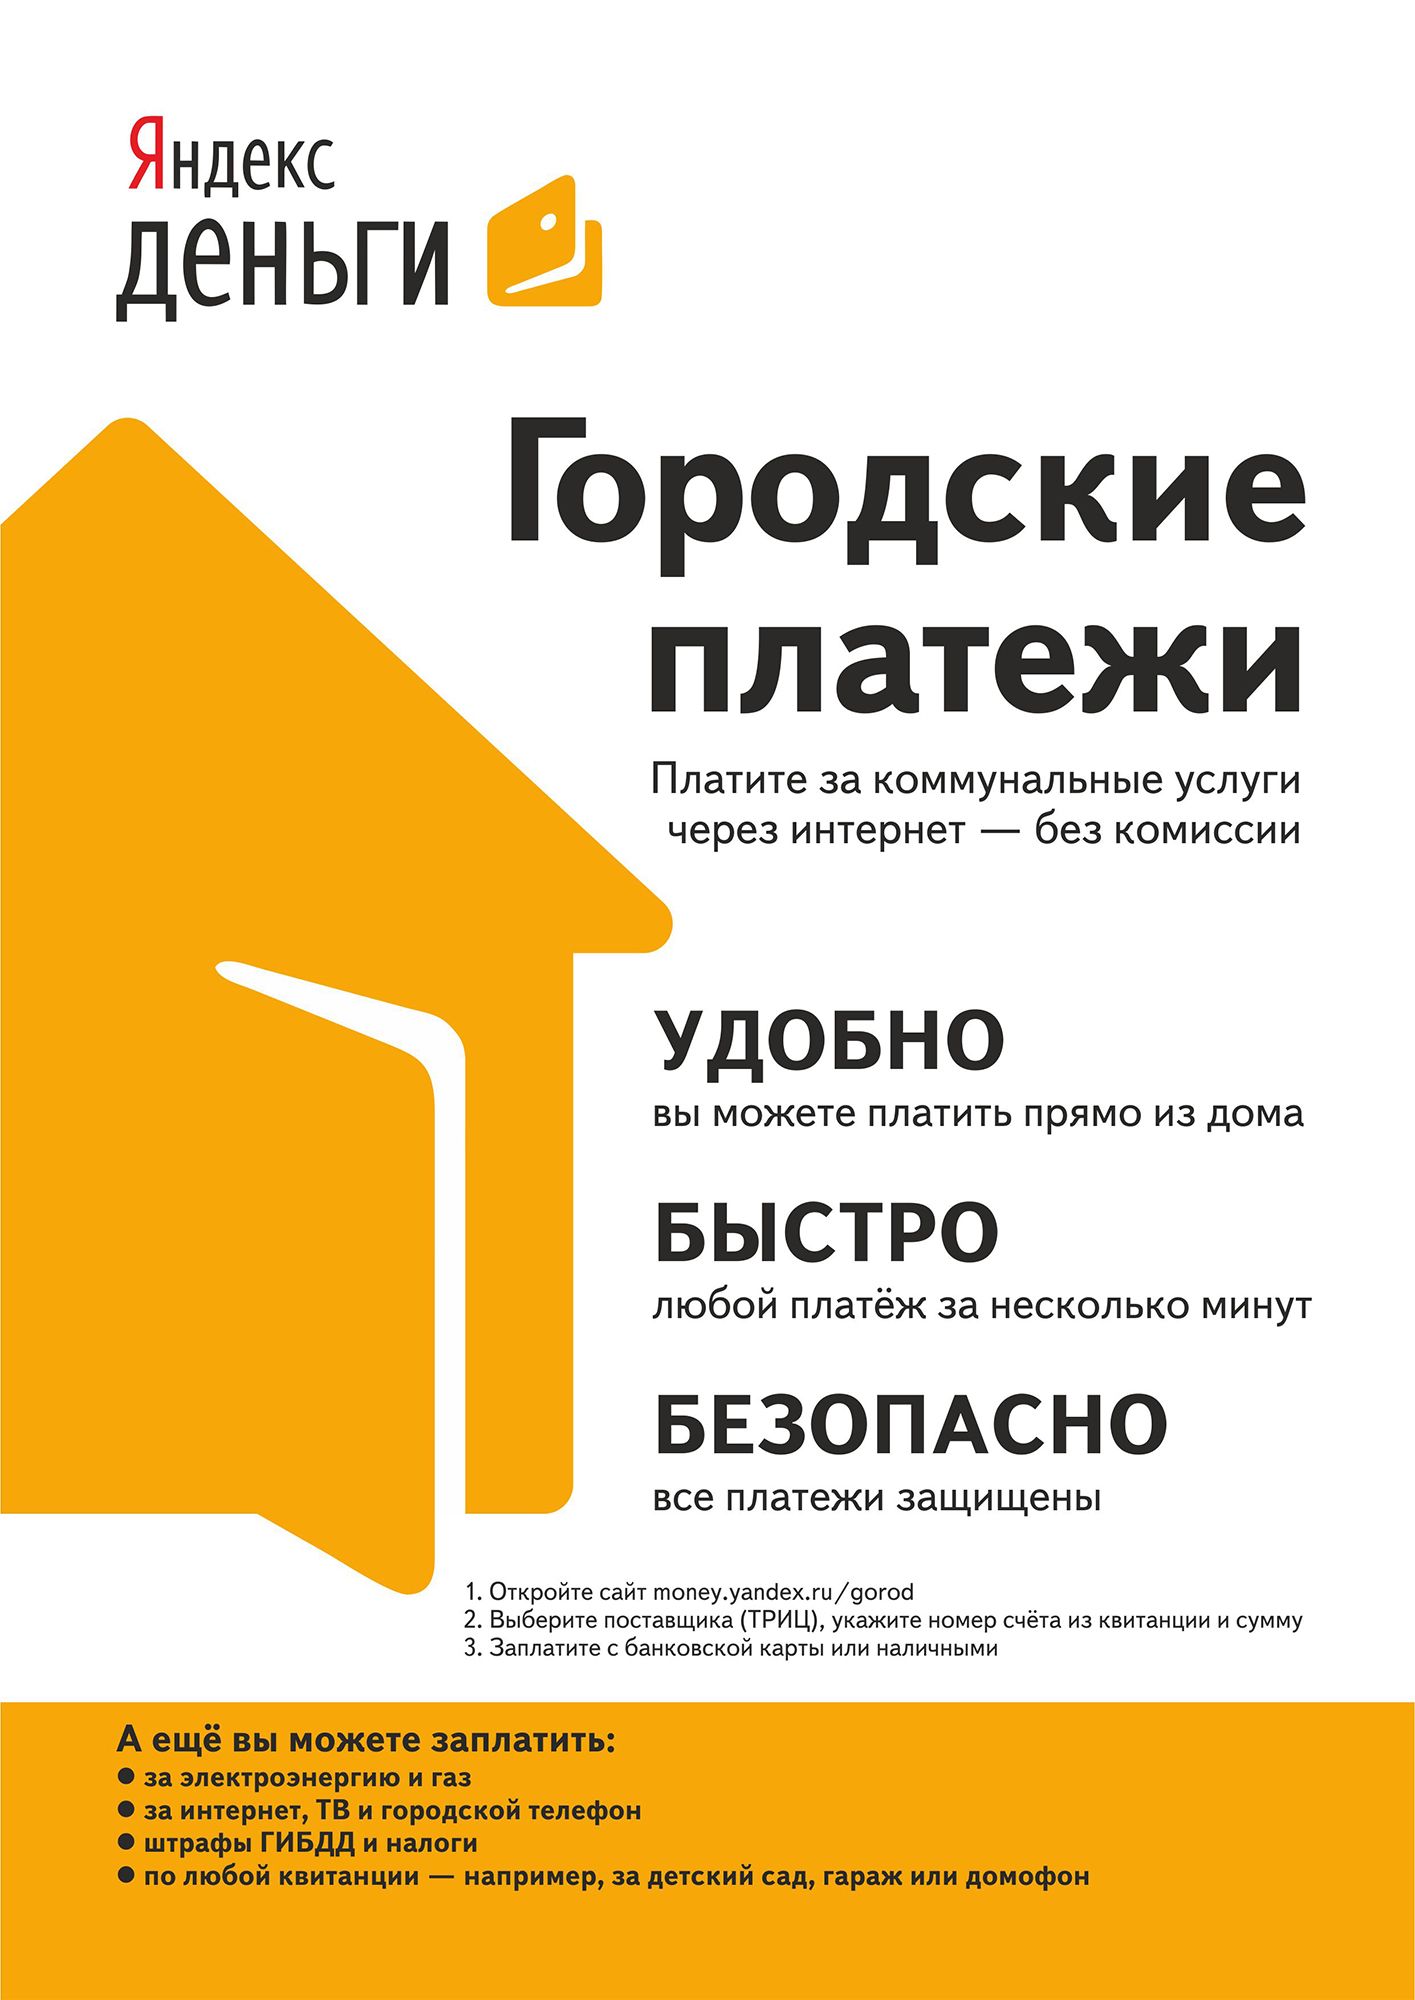 Реклама Яндекс.Денег для оплаты ЖКХ - дизайнер AlexSh1978